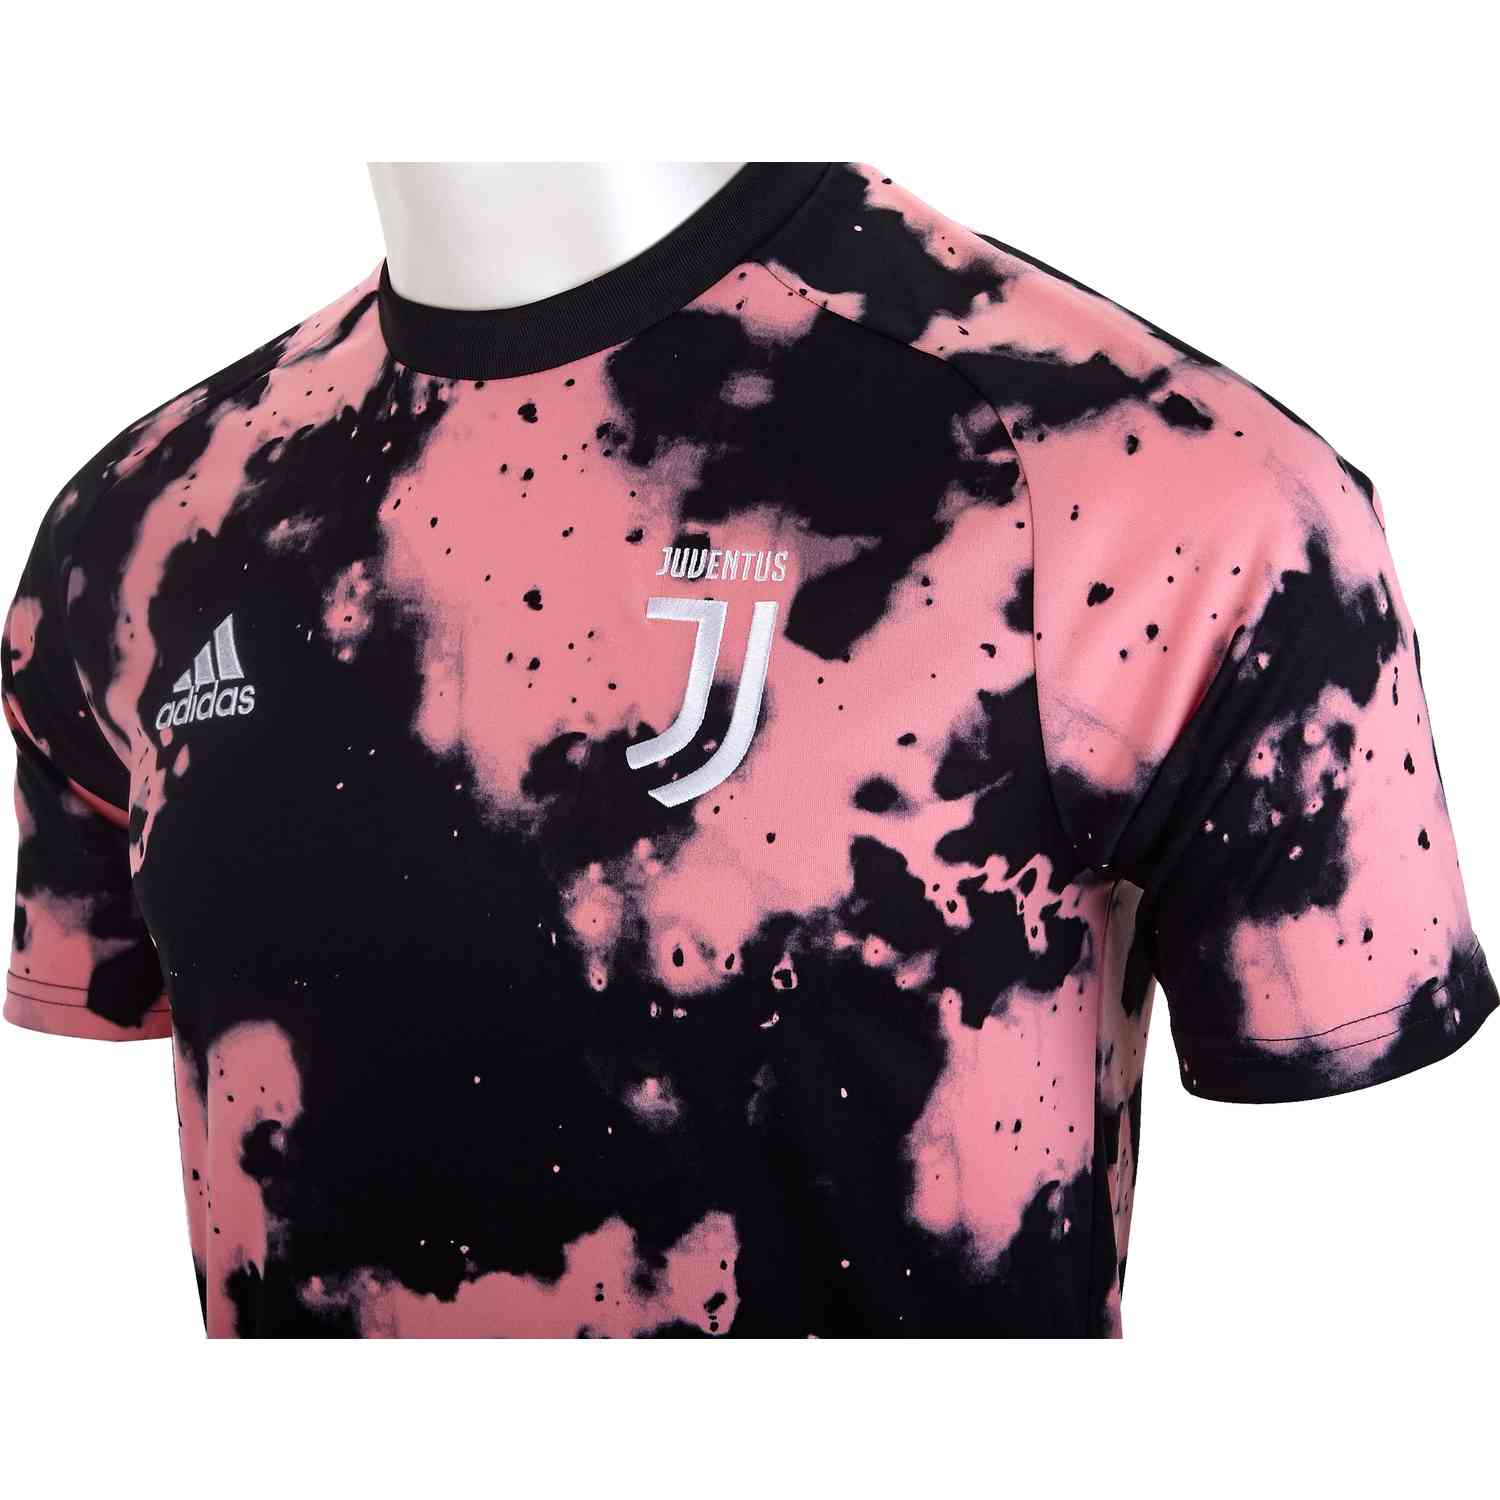 adidas Juventus Pre-match Jersey - Pink/Black - SoccerPro